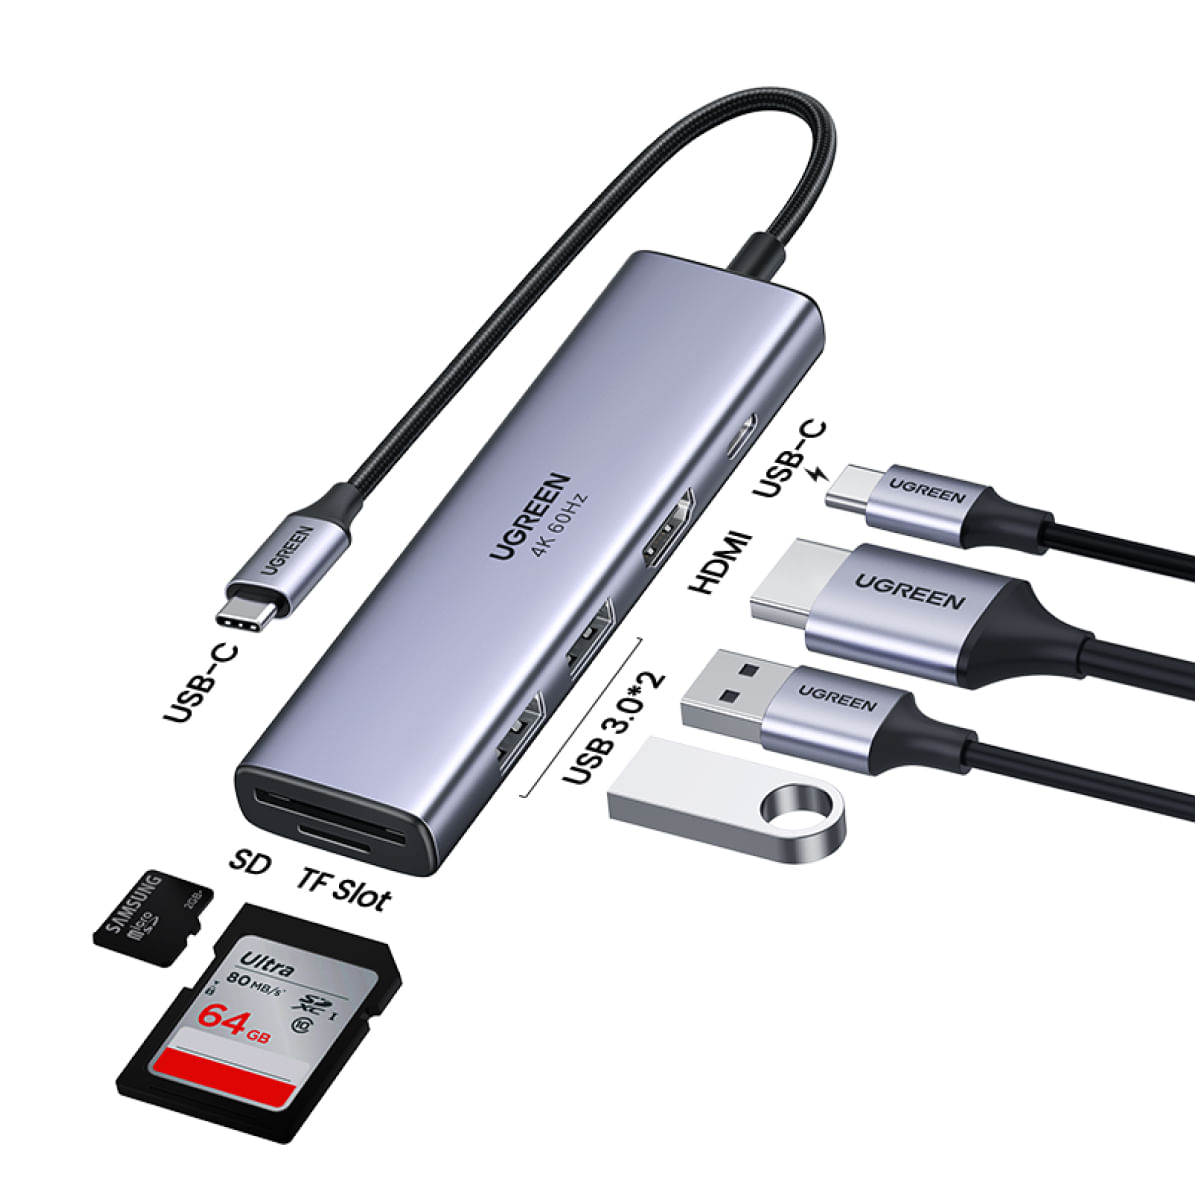 Ripley - USB C A HDMI BENFEI HUB USB TIPO C 2 PUERTOS USB-C A USB